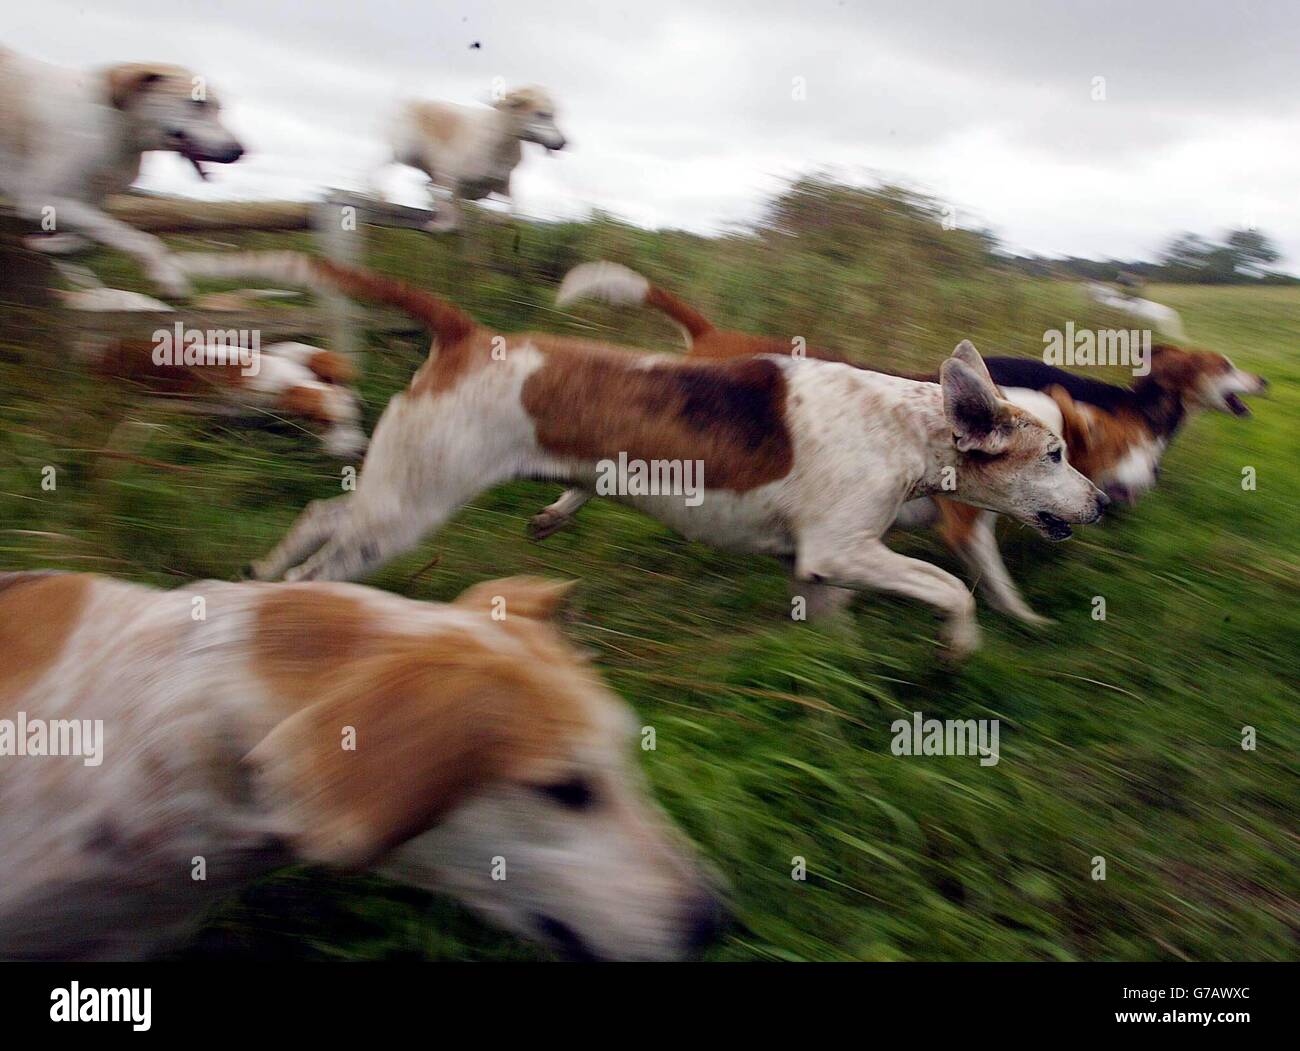 In Trimdon im Wahlkreis von Tony Blair, Sedgefield, werden Jagdhunde auf der Jagd sein, während Labour sich auf eine bevorstehende Abstimmung über das Verbot der Jagd mit Hunden vorbereitet. Stockfoto